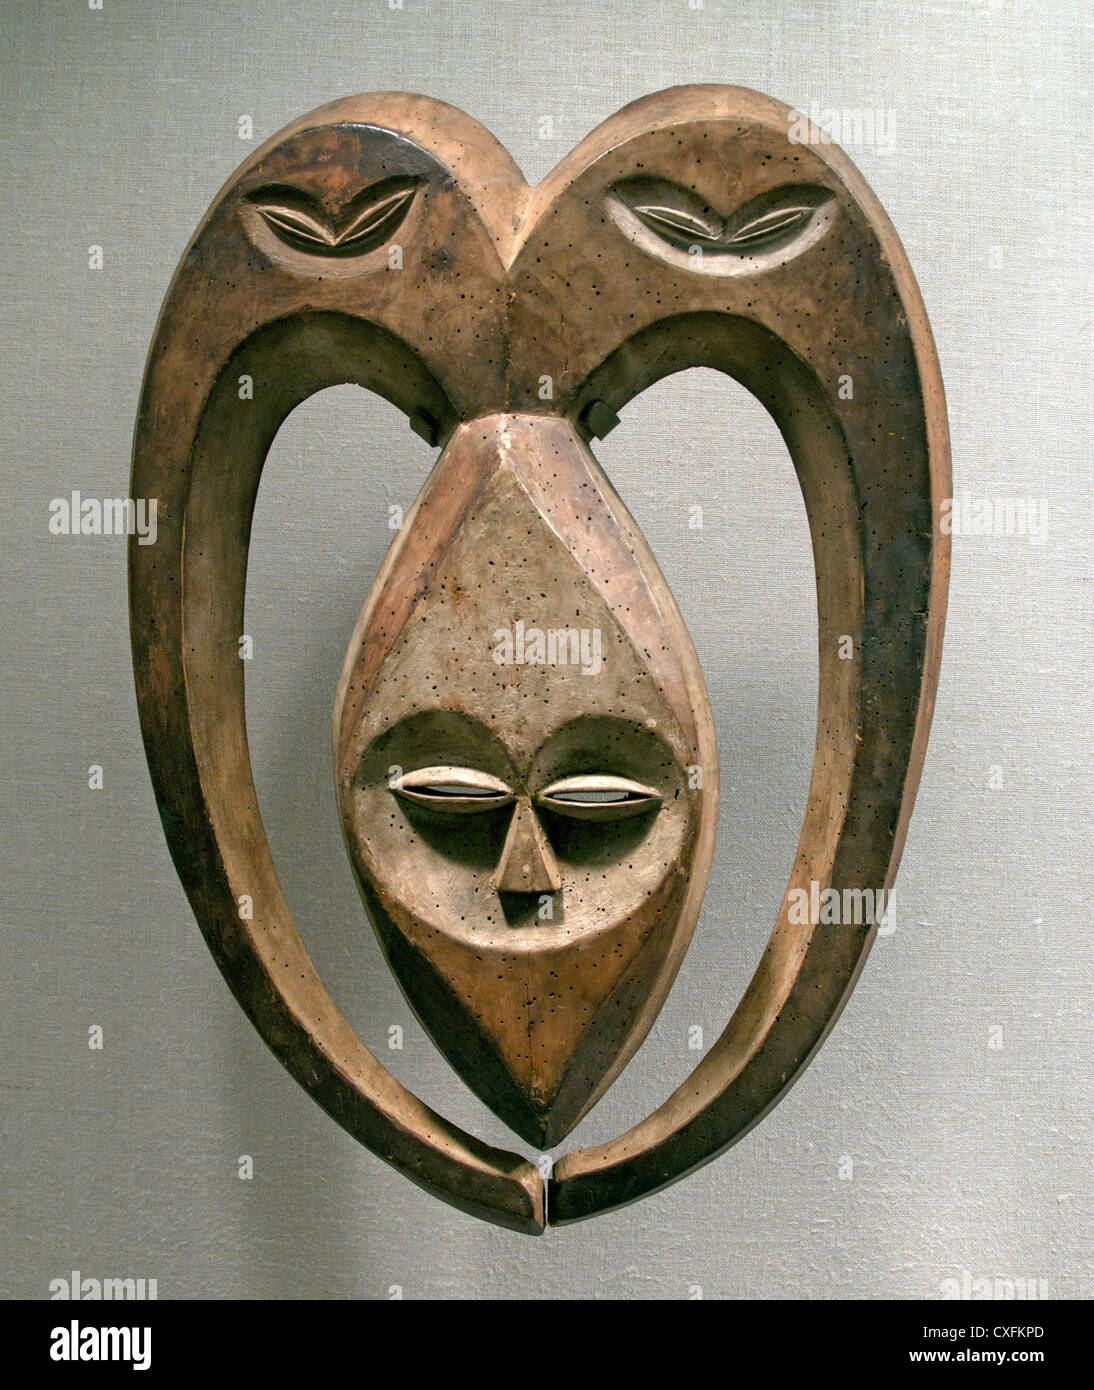 Masque Beete Ram ( Bata ) 19e siècle ou le Gabon République du Congo lvindo ou région du fleuve Sangha Kwele autochtones 52 cm) Afrique Banque D'Images